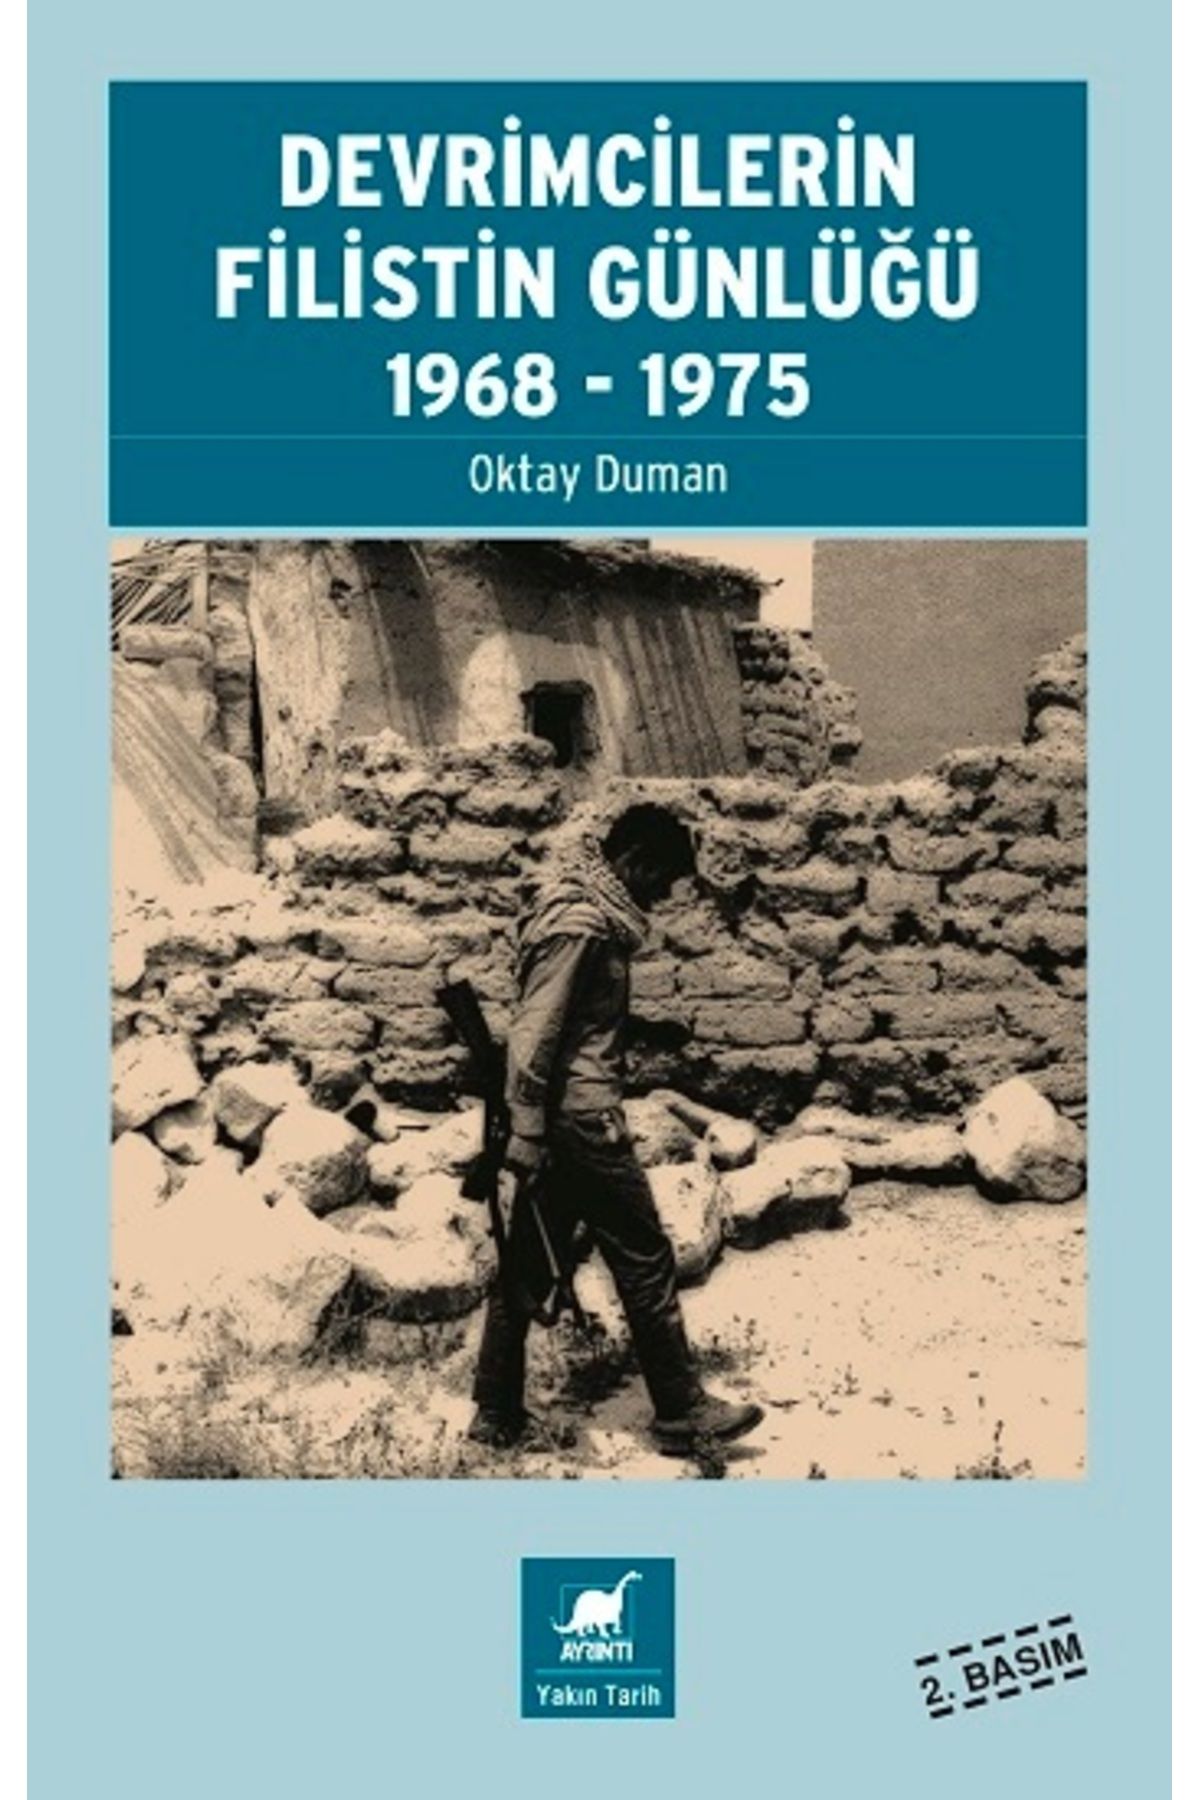 Ayrıntı Yayınları Devrimcilerin Filistin Günlüğü 1968-1975